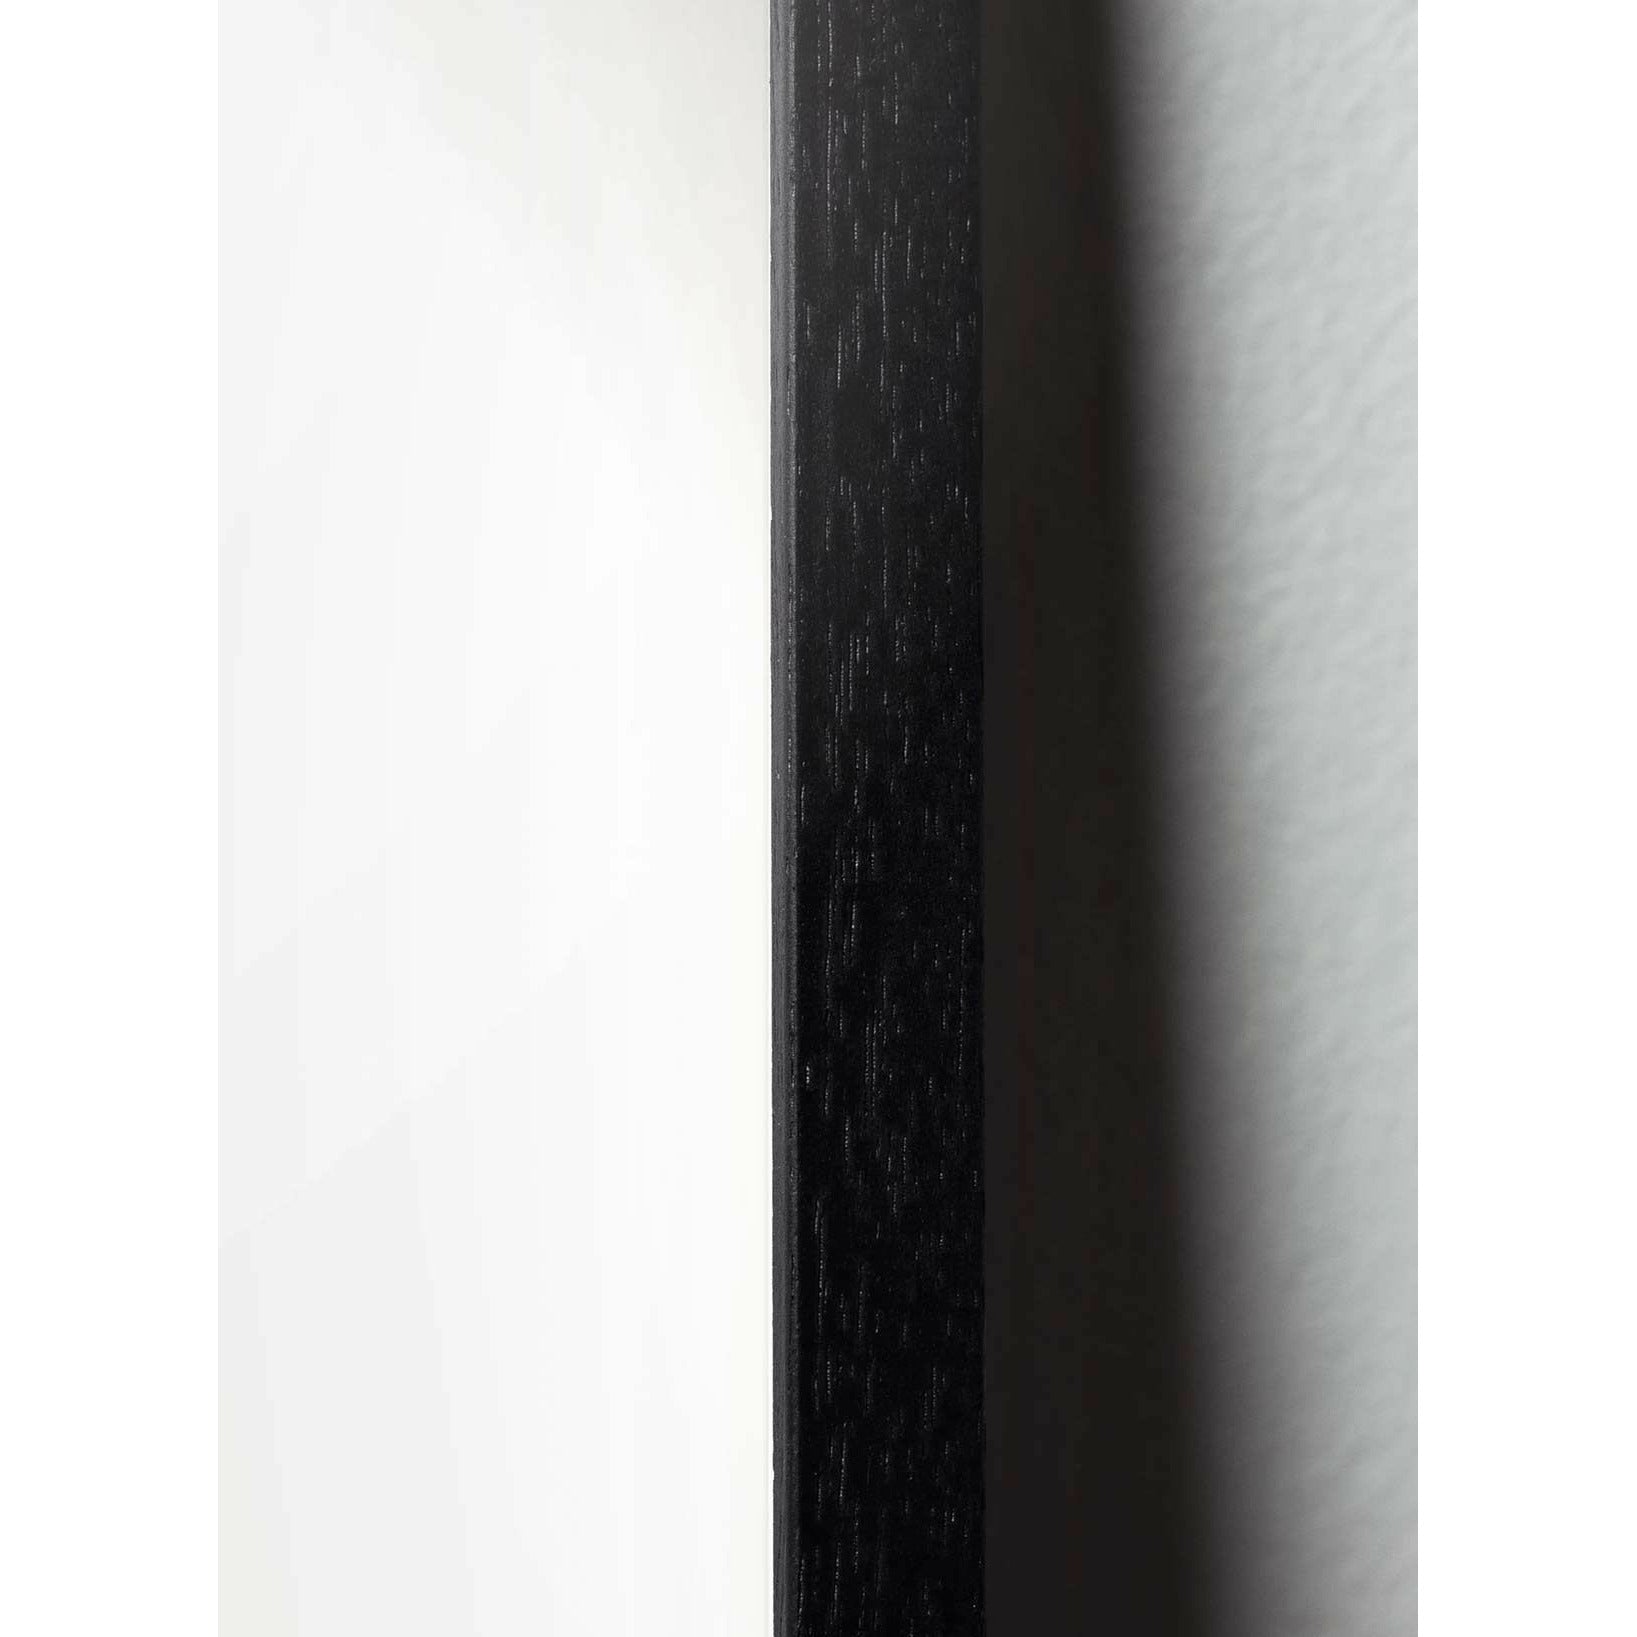 Poster della sfilata di cigni di frutta, cornice in legno laccato nero, 70x100 cm